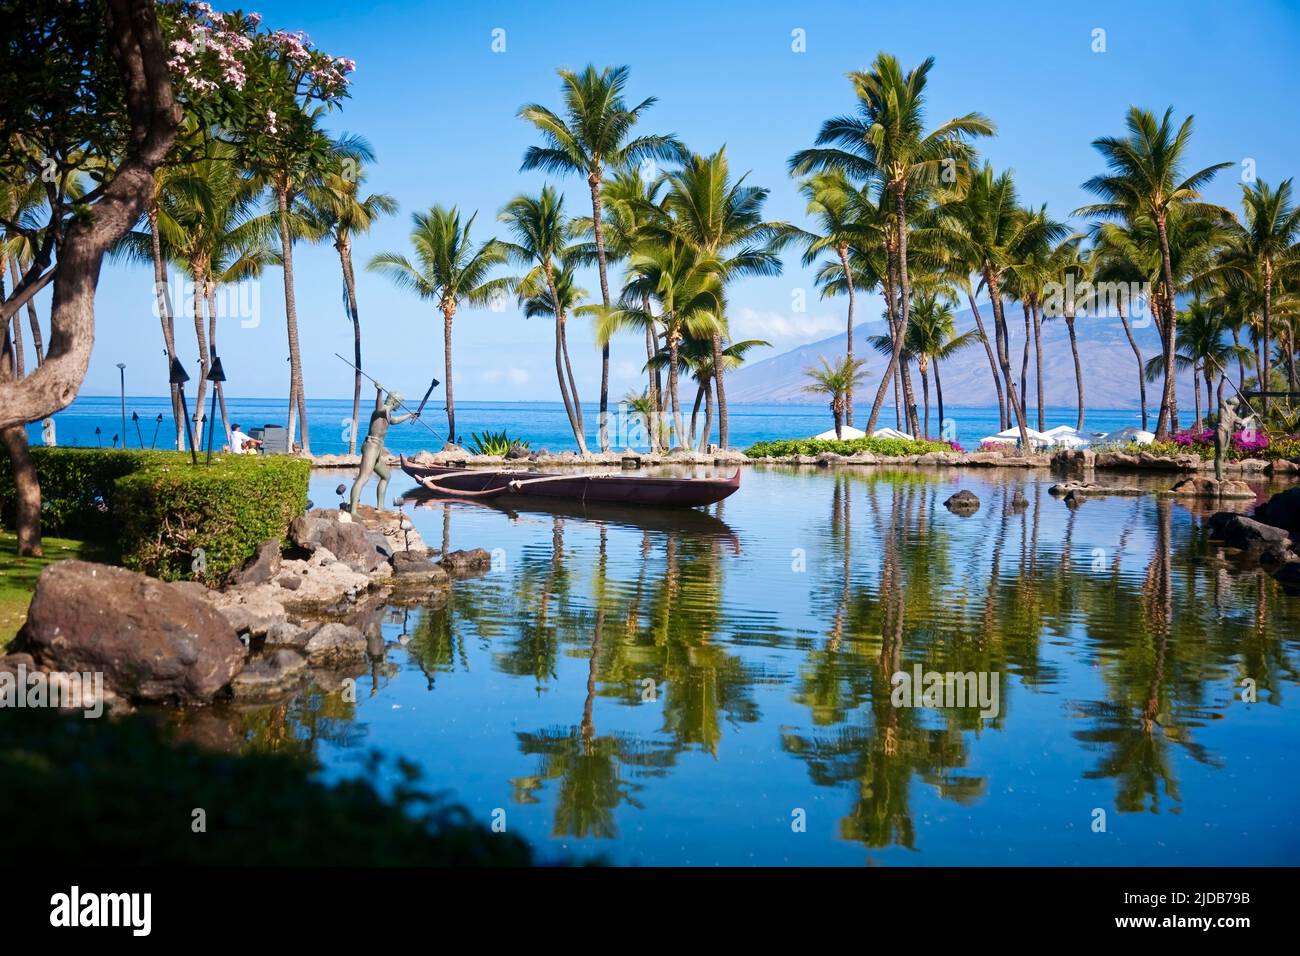 Grand Wailea Resort, Maui, Hawaï Banque D'Images